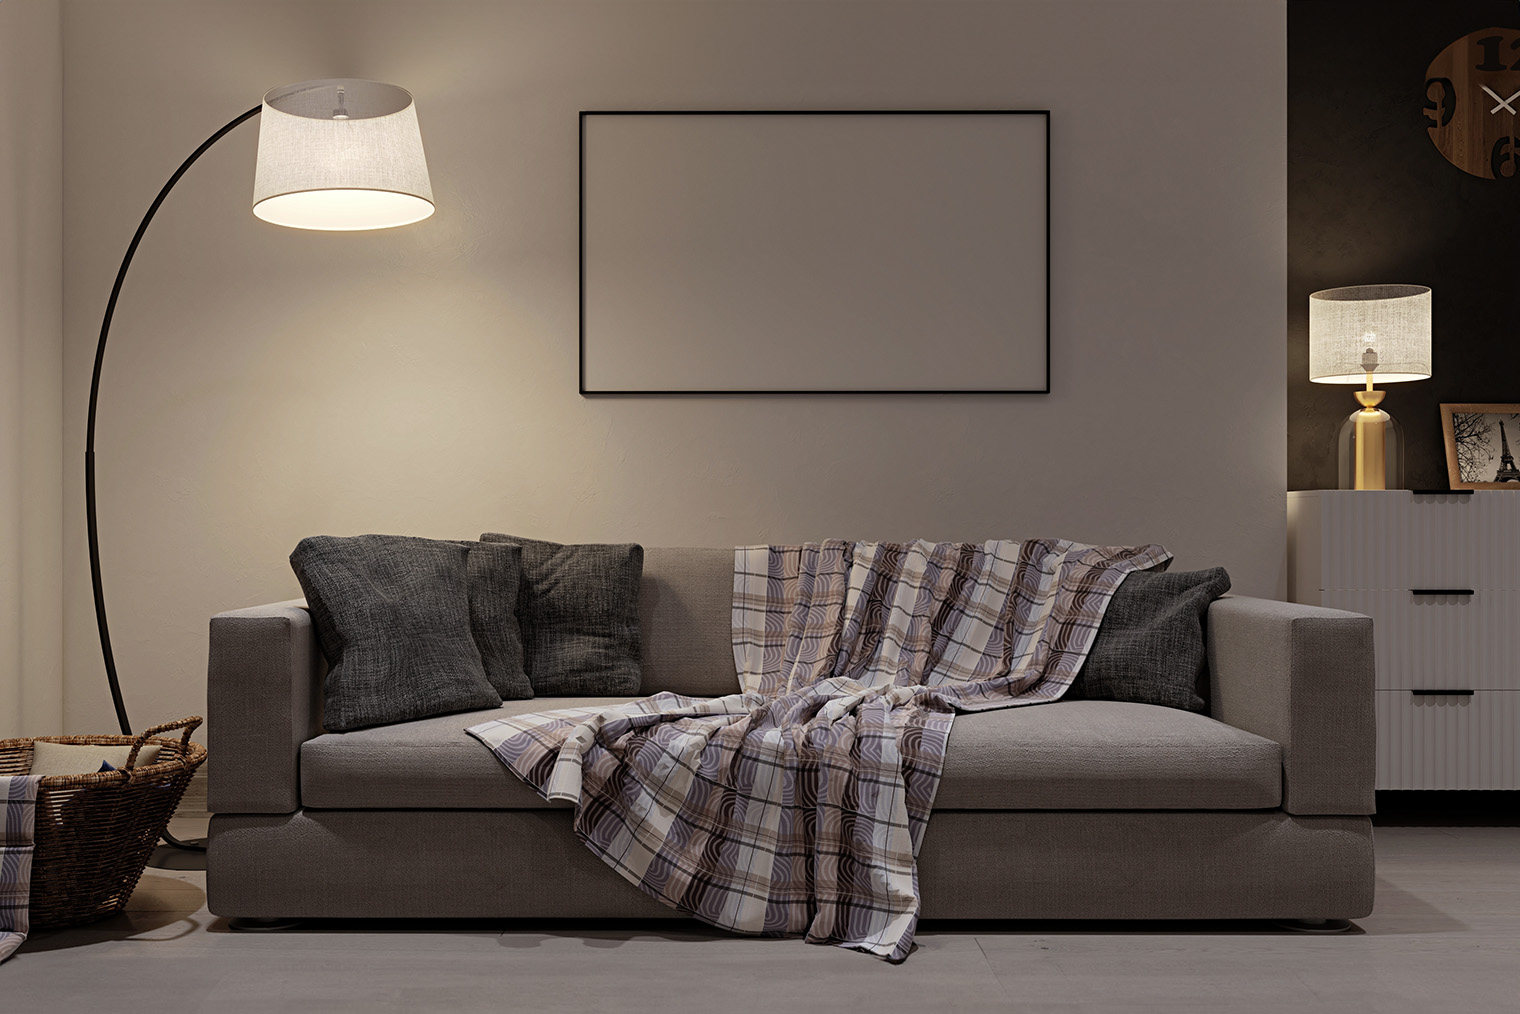 Торшер около дивана делает зону гостиной более уютной. Фотография: Edge Creative / Shutterstock / FOTODOM